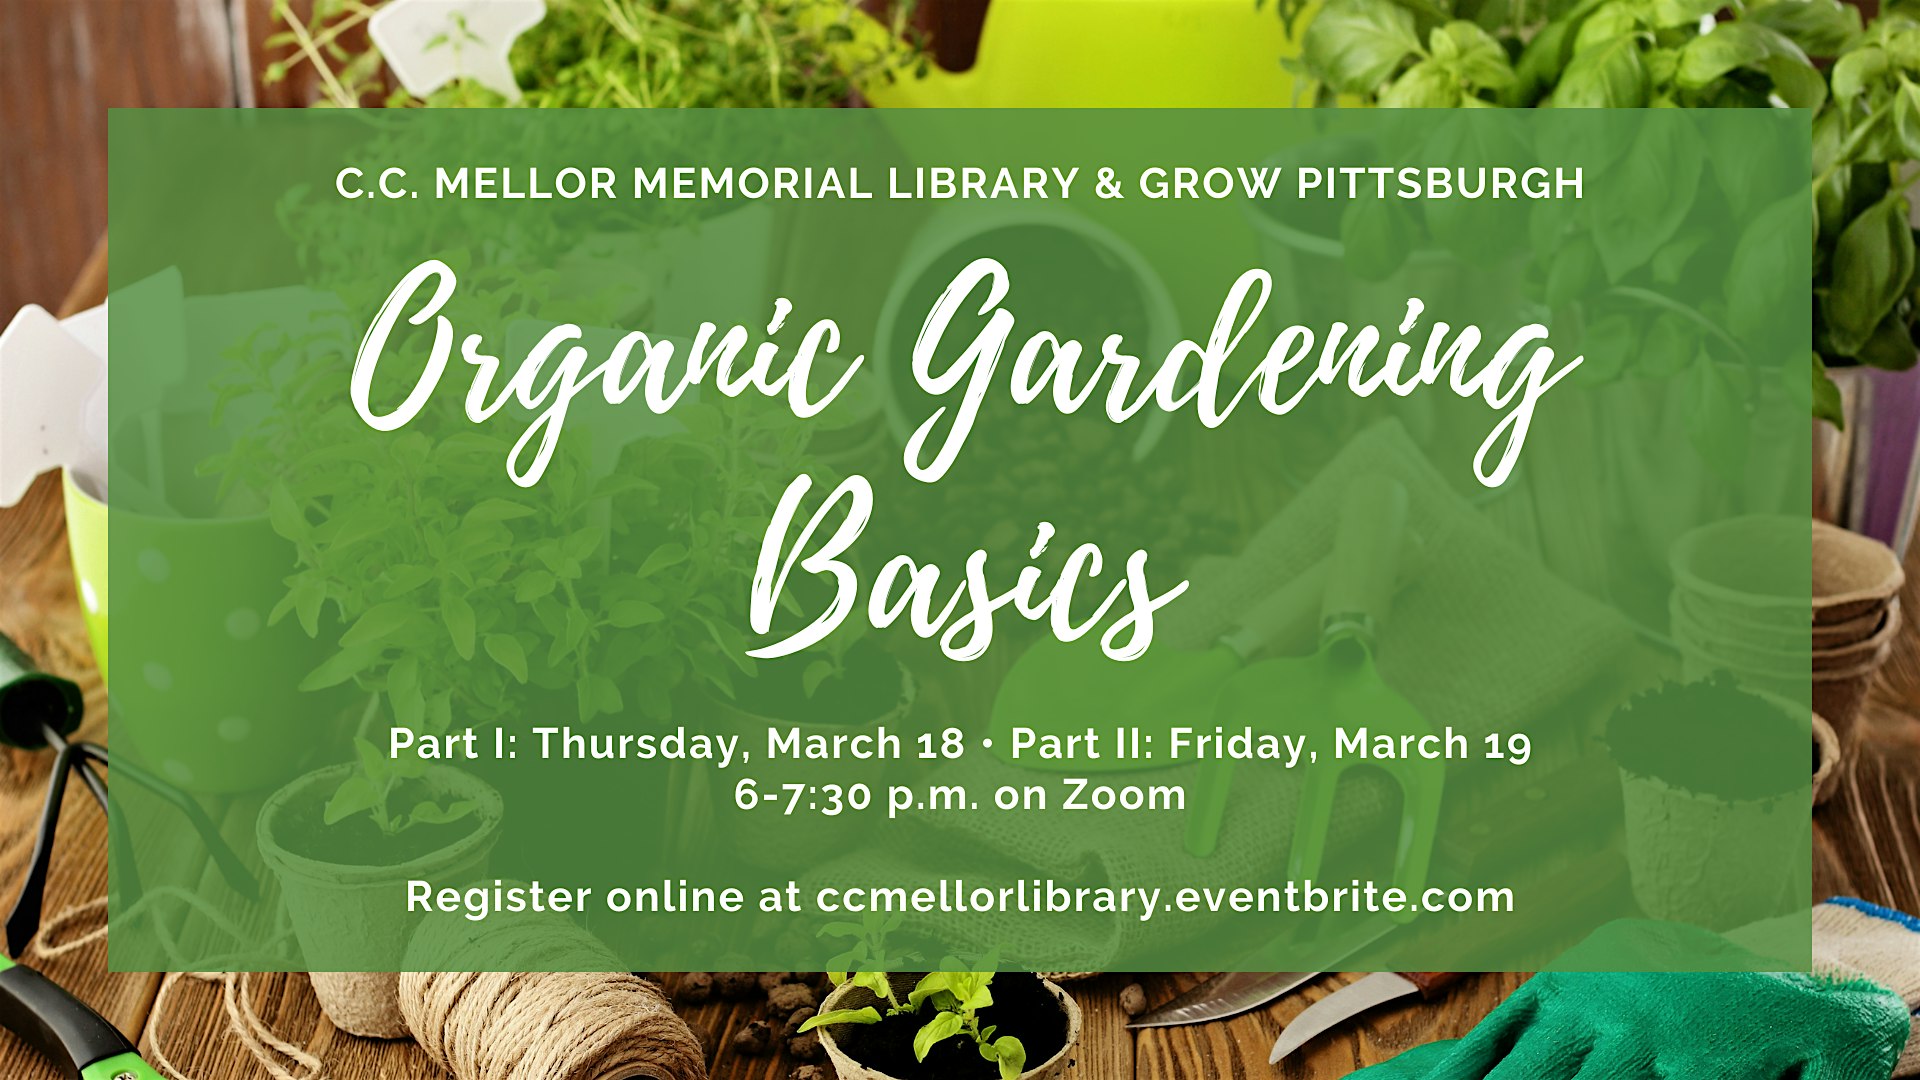 FRI, MAR 19, 2021 - Organic Gardening Basics Part II